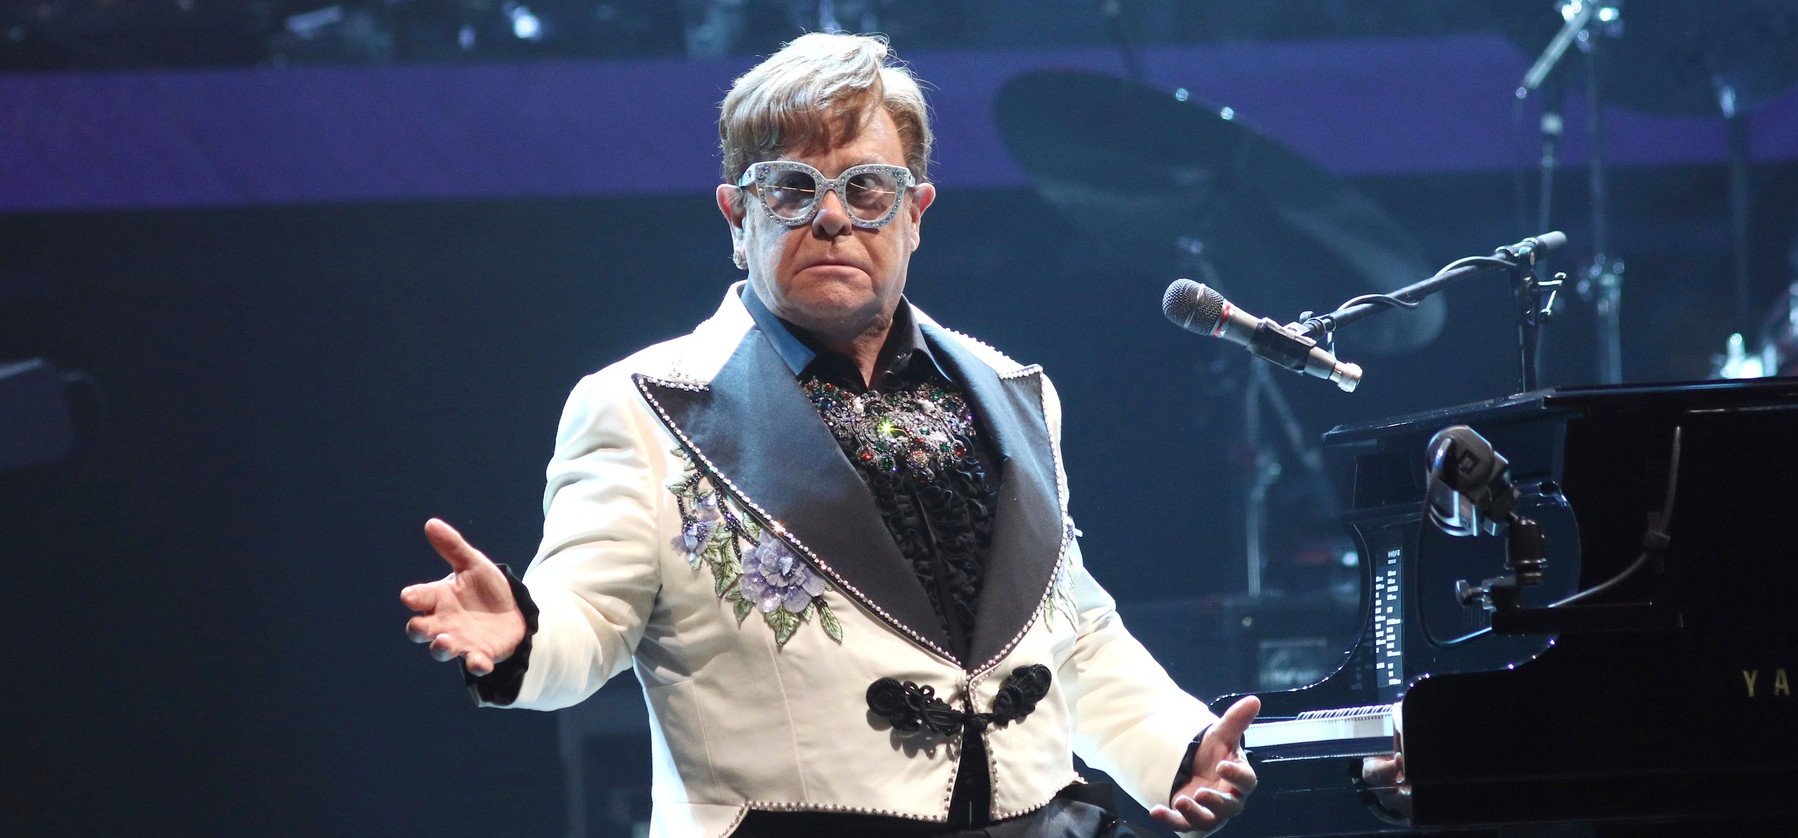 Kiderült az igazság Elton John állapotáról - Kezdhetünk aggódni a legendás zenészért?